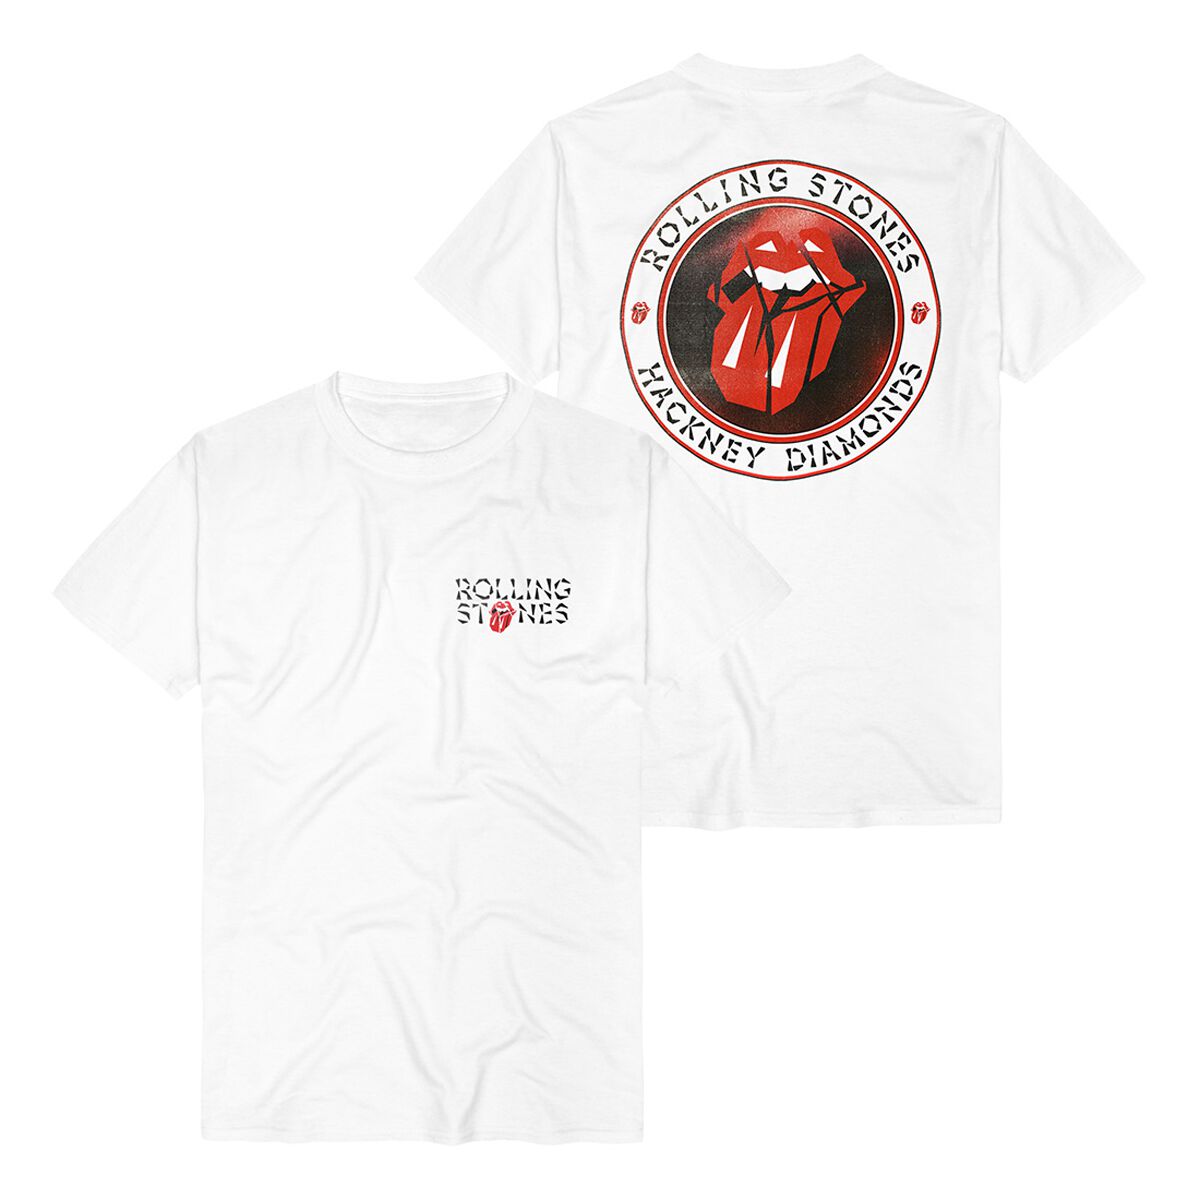 The Rolling Stones T-Shirt - Hackney Diamonds Circle Label - S bis 3XL - für Männer - Größe 3XL - weiß  - Lizenziertes Merchandise!